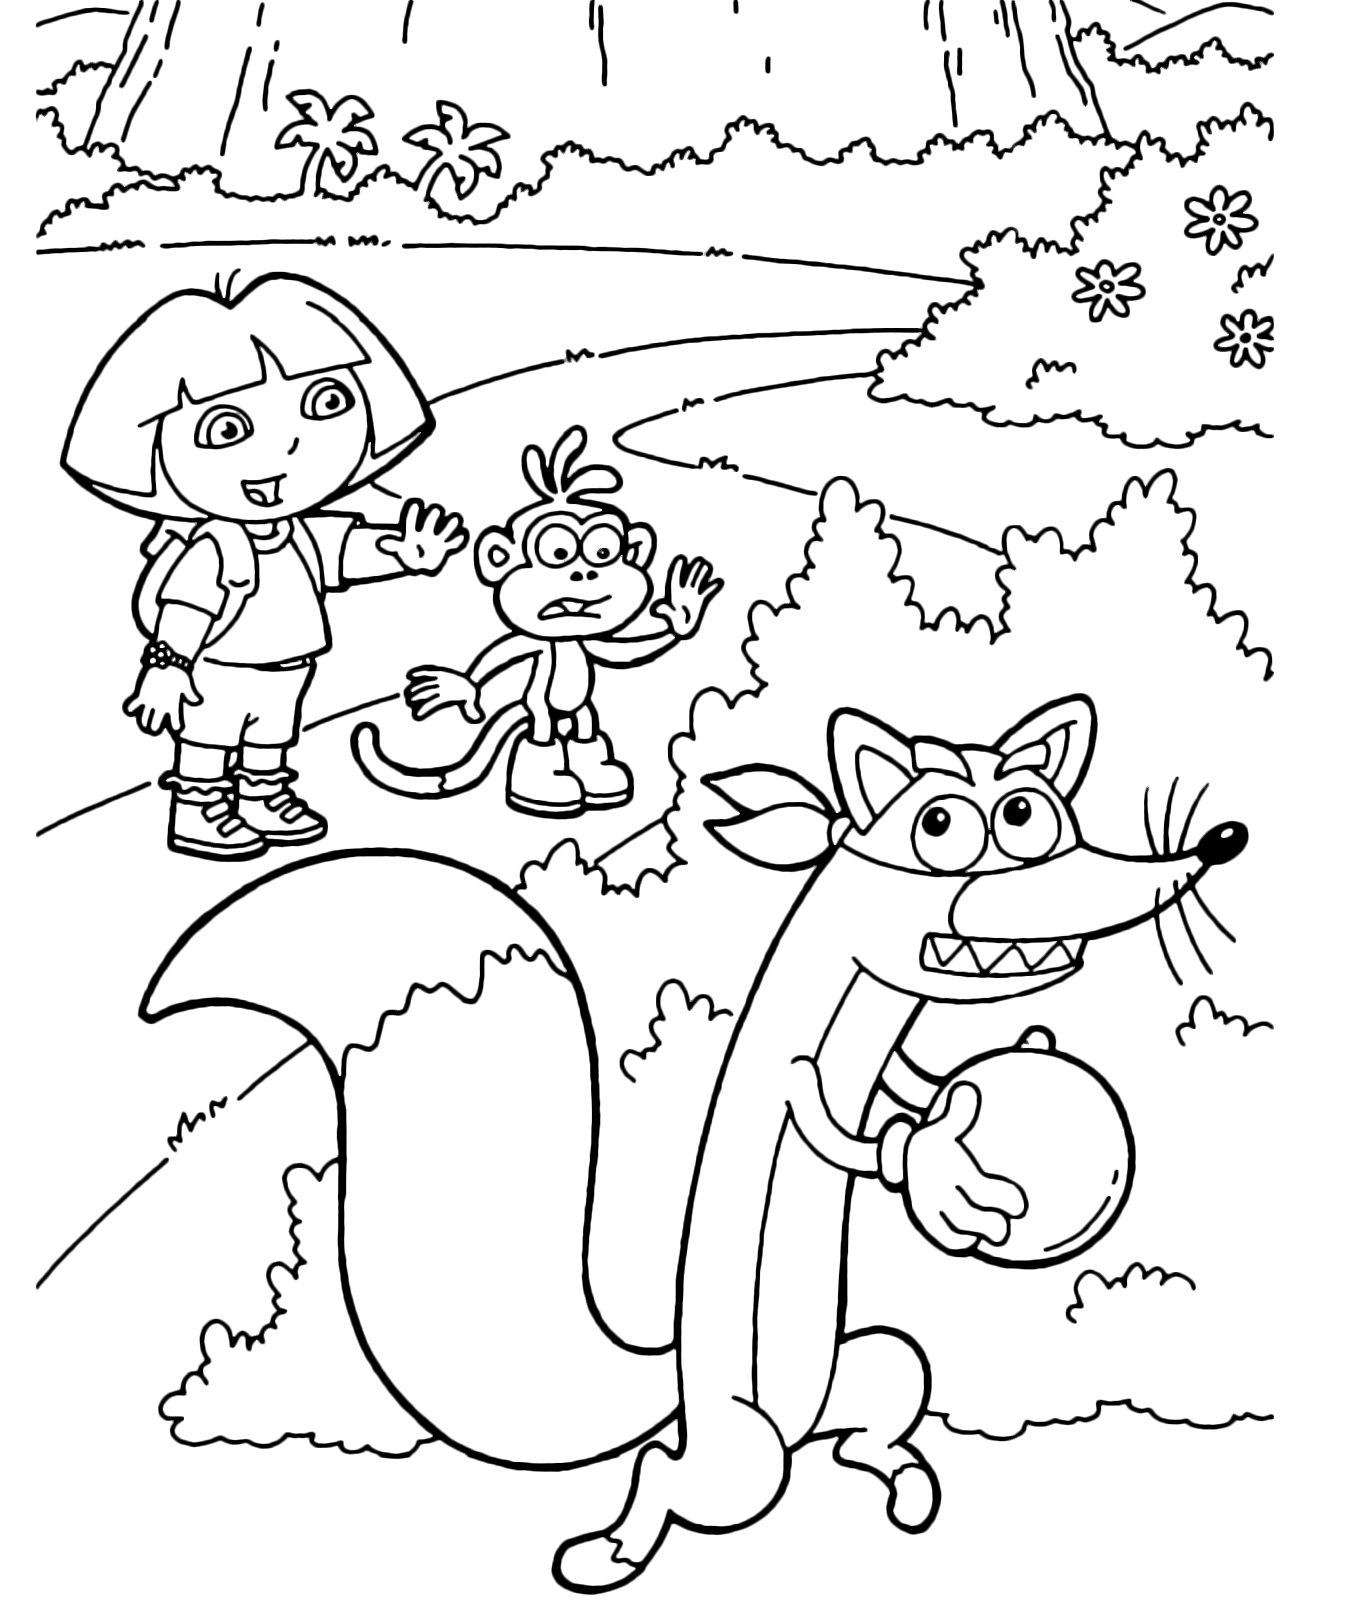 Dora l'esploratrice - Dora e Boots cercano di fermare Swiper mentre ruba una palla